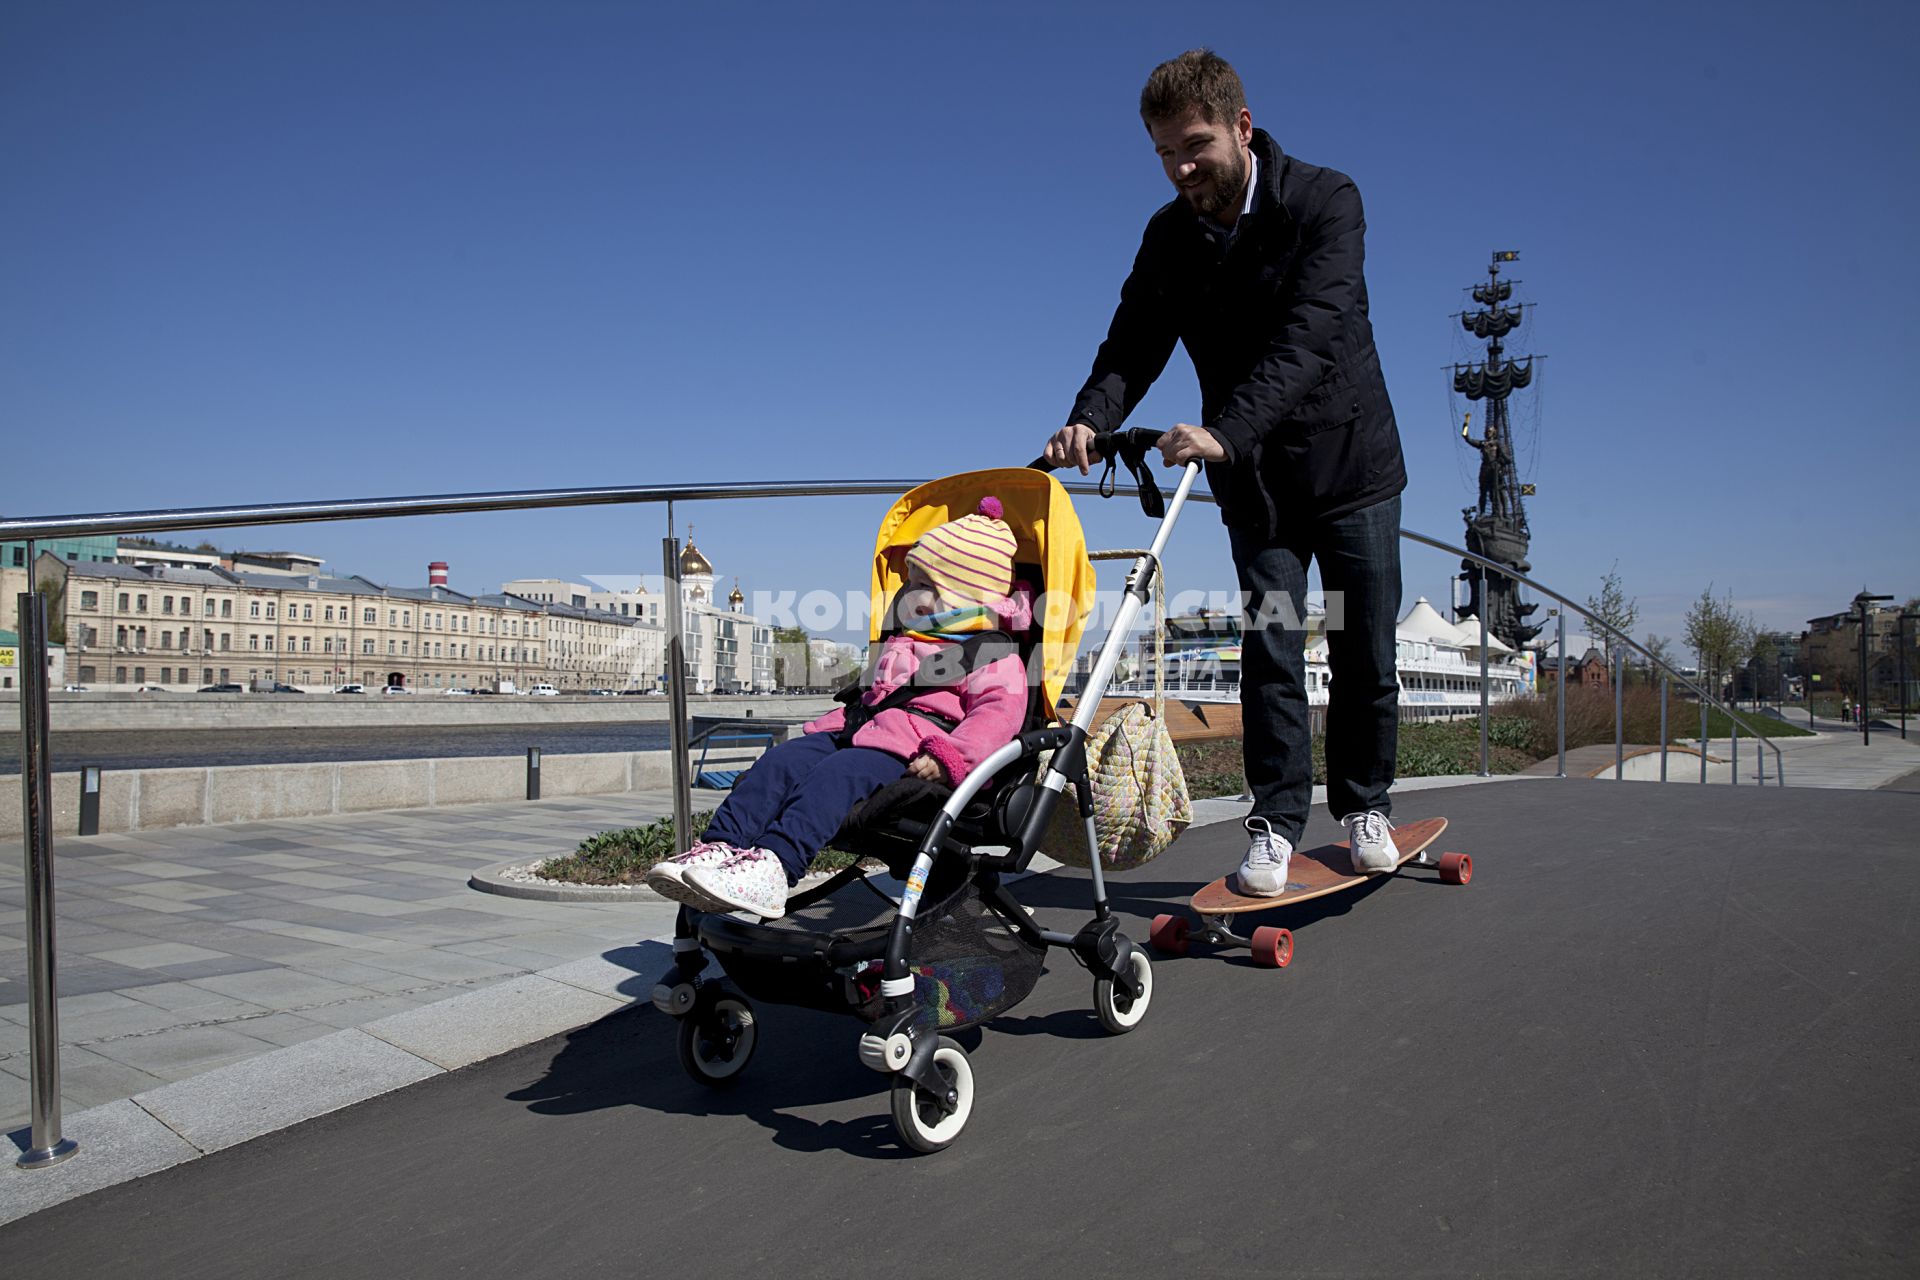 Москва. Музеон. Папа с ребенком гуляют по Крымской набережной.